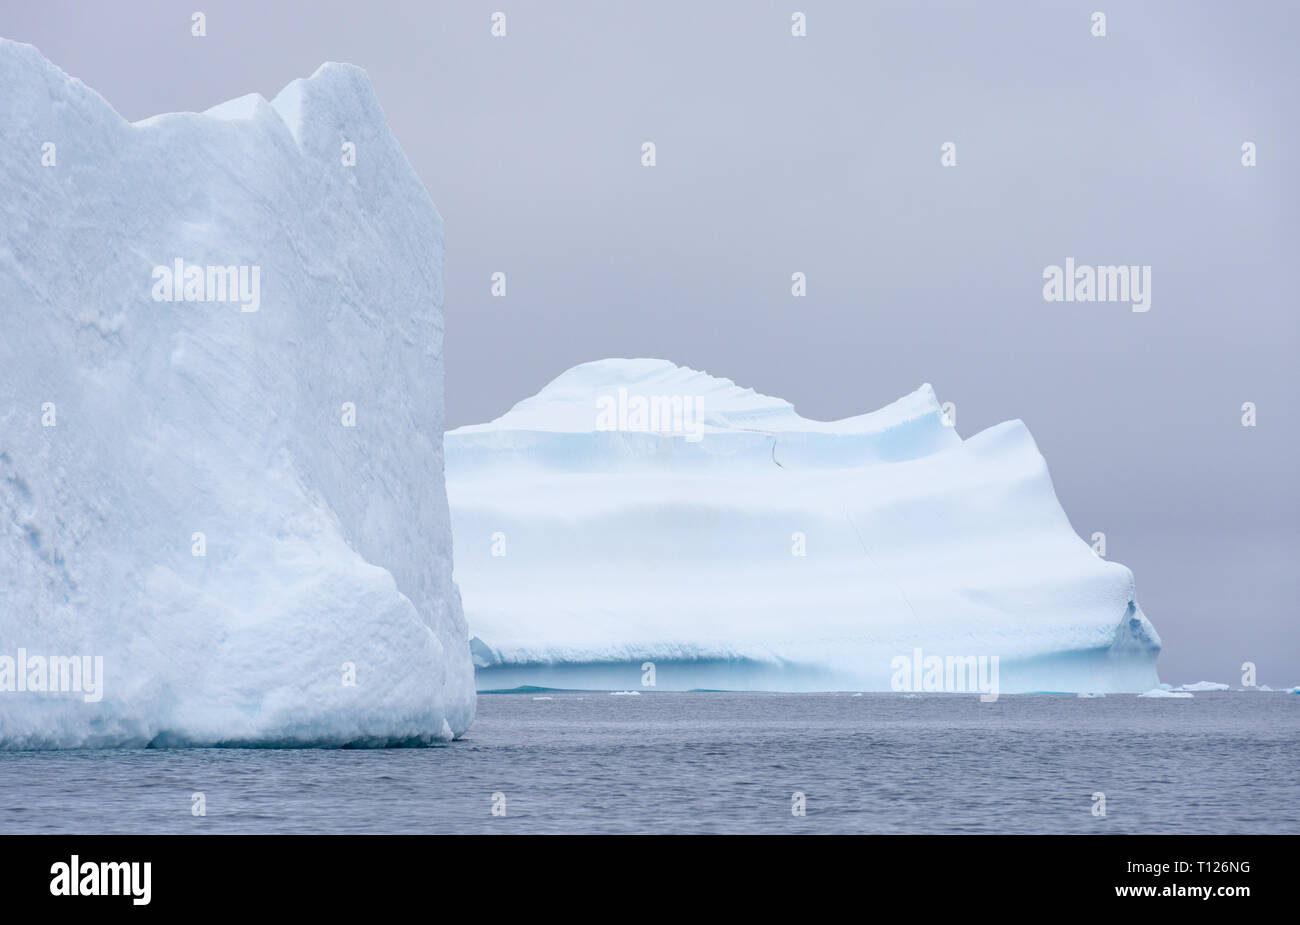 Deux grands icebergs flottant dans l'océan du sud de l'Antarctique avec un ciel couvert ci-dessus. Banque D'Images